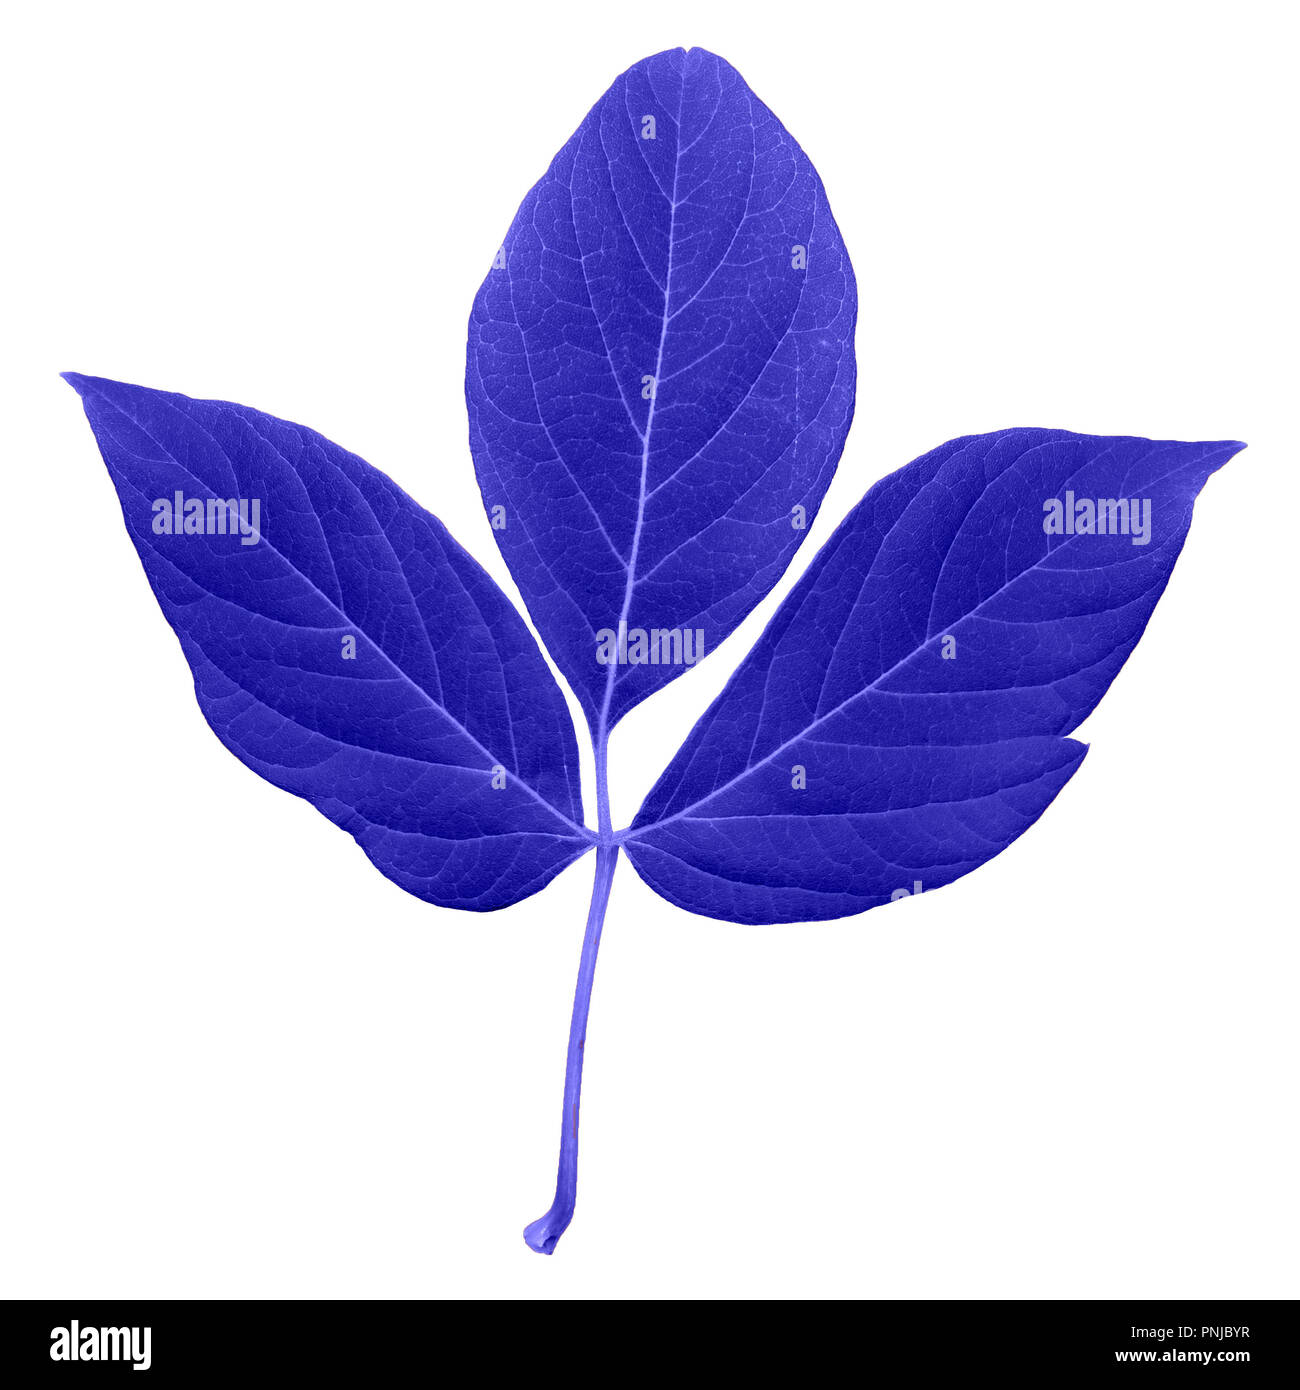 Les feuilles fraîches de couleur bleu avec tige, feuilles pennées avec beaucoup de rayures isolé sur fond blanc Banque D'Images